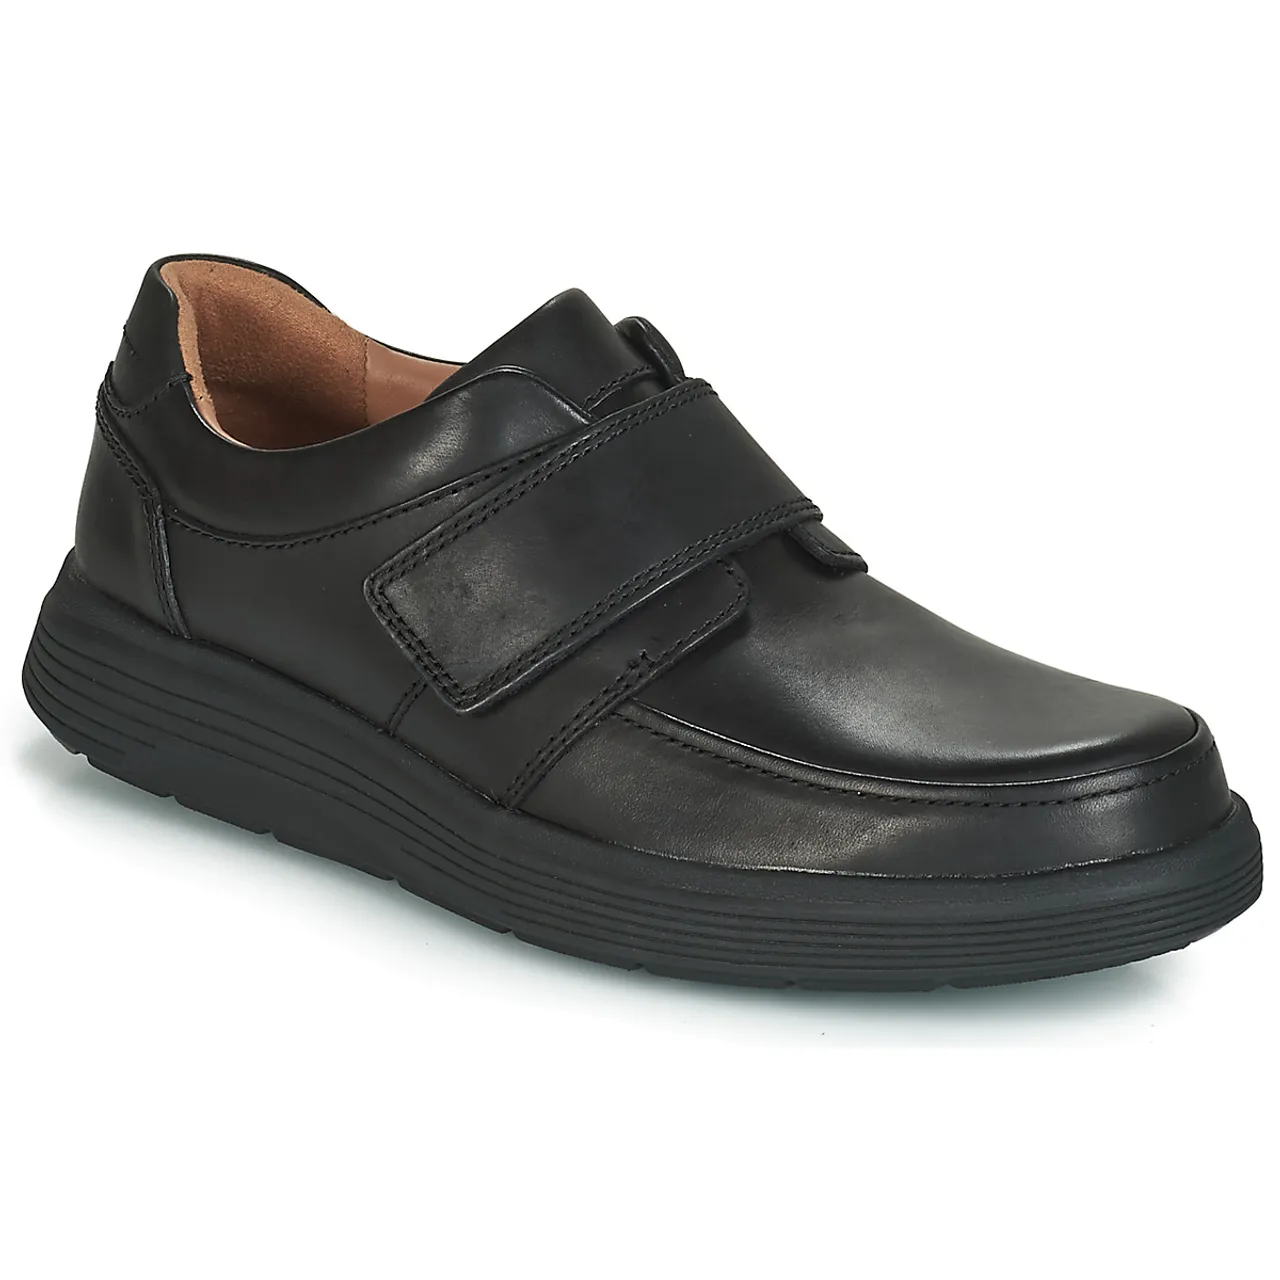 Clarks  UN ABODE STRAP  men's Casual Shoes in Black